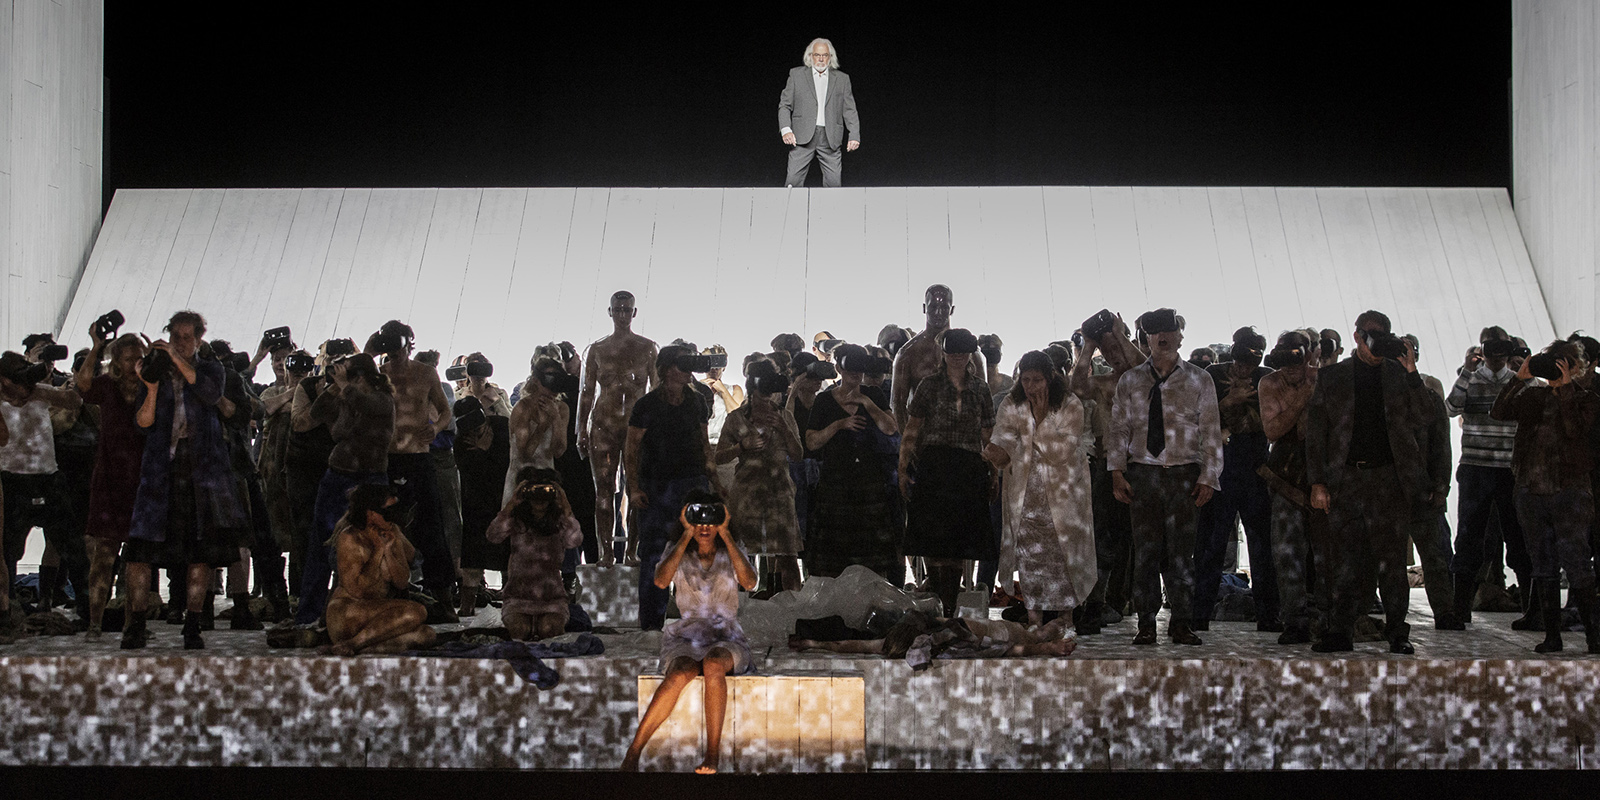 Szene aus "Moses und Aron": Viele Sänger*innen stehen verteilt vor einem einzelnen Sänger, der erhöht im hinteren Teil der Bühne stehtsteht